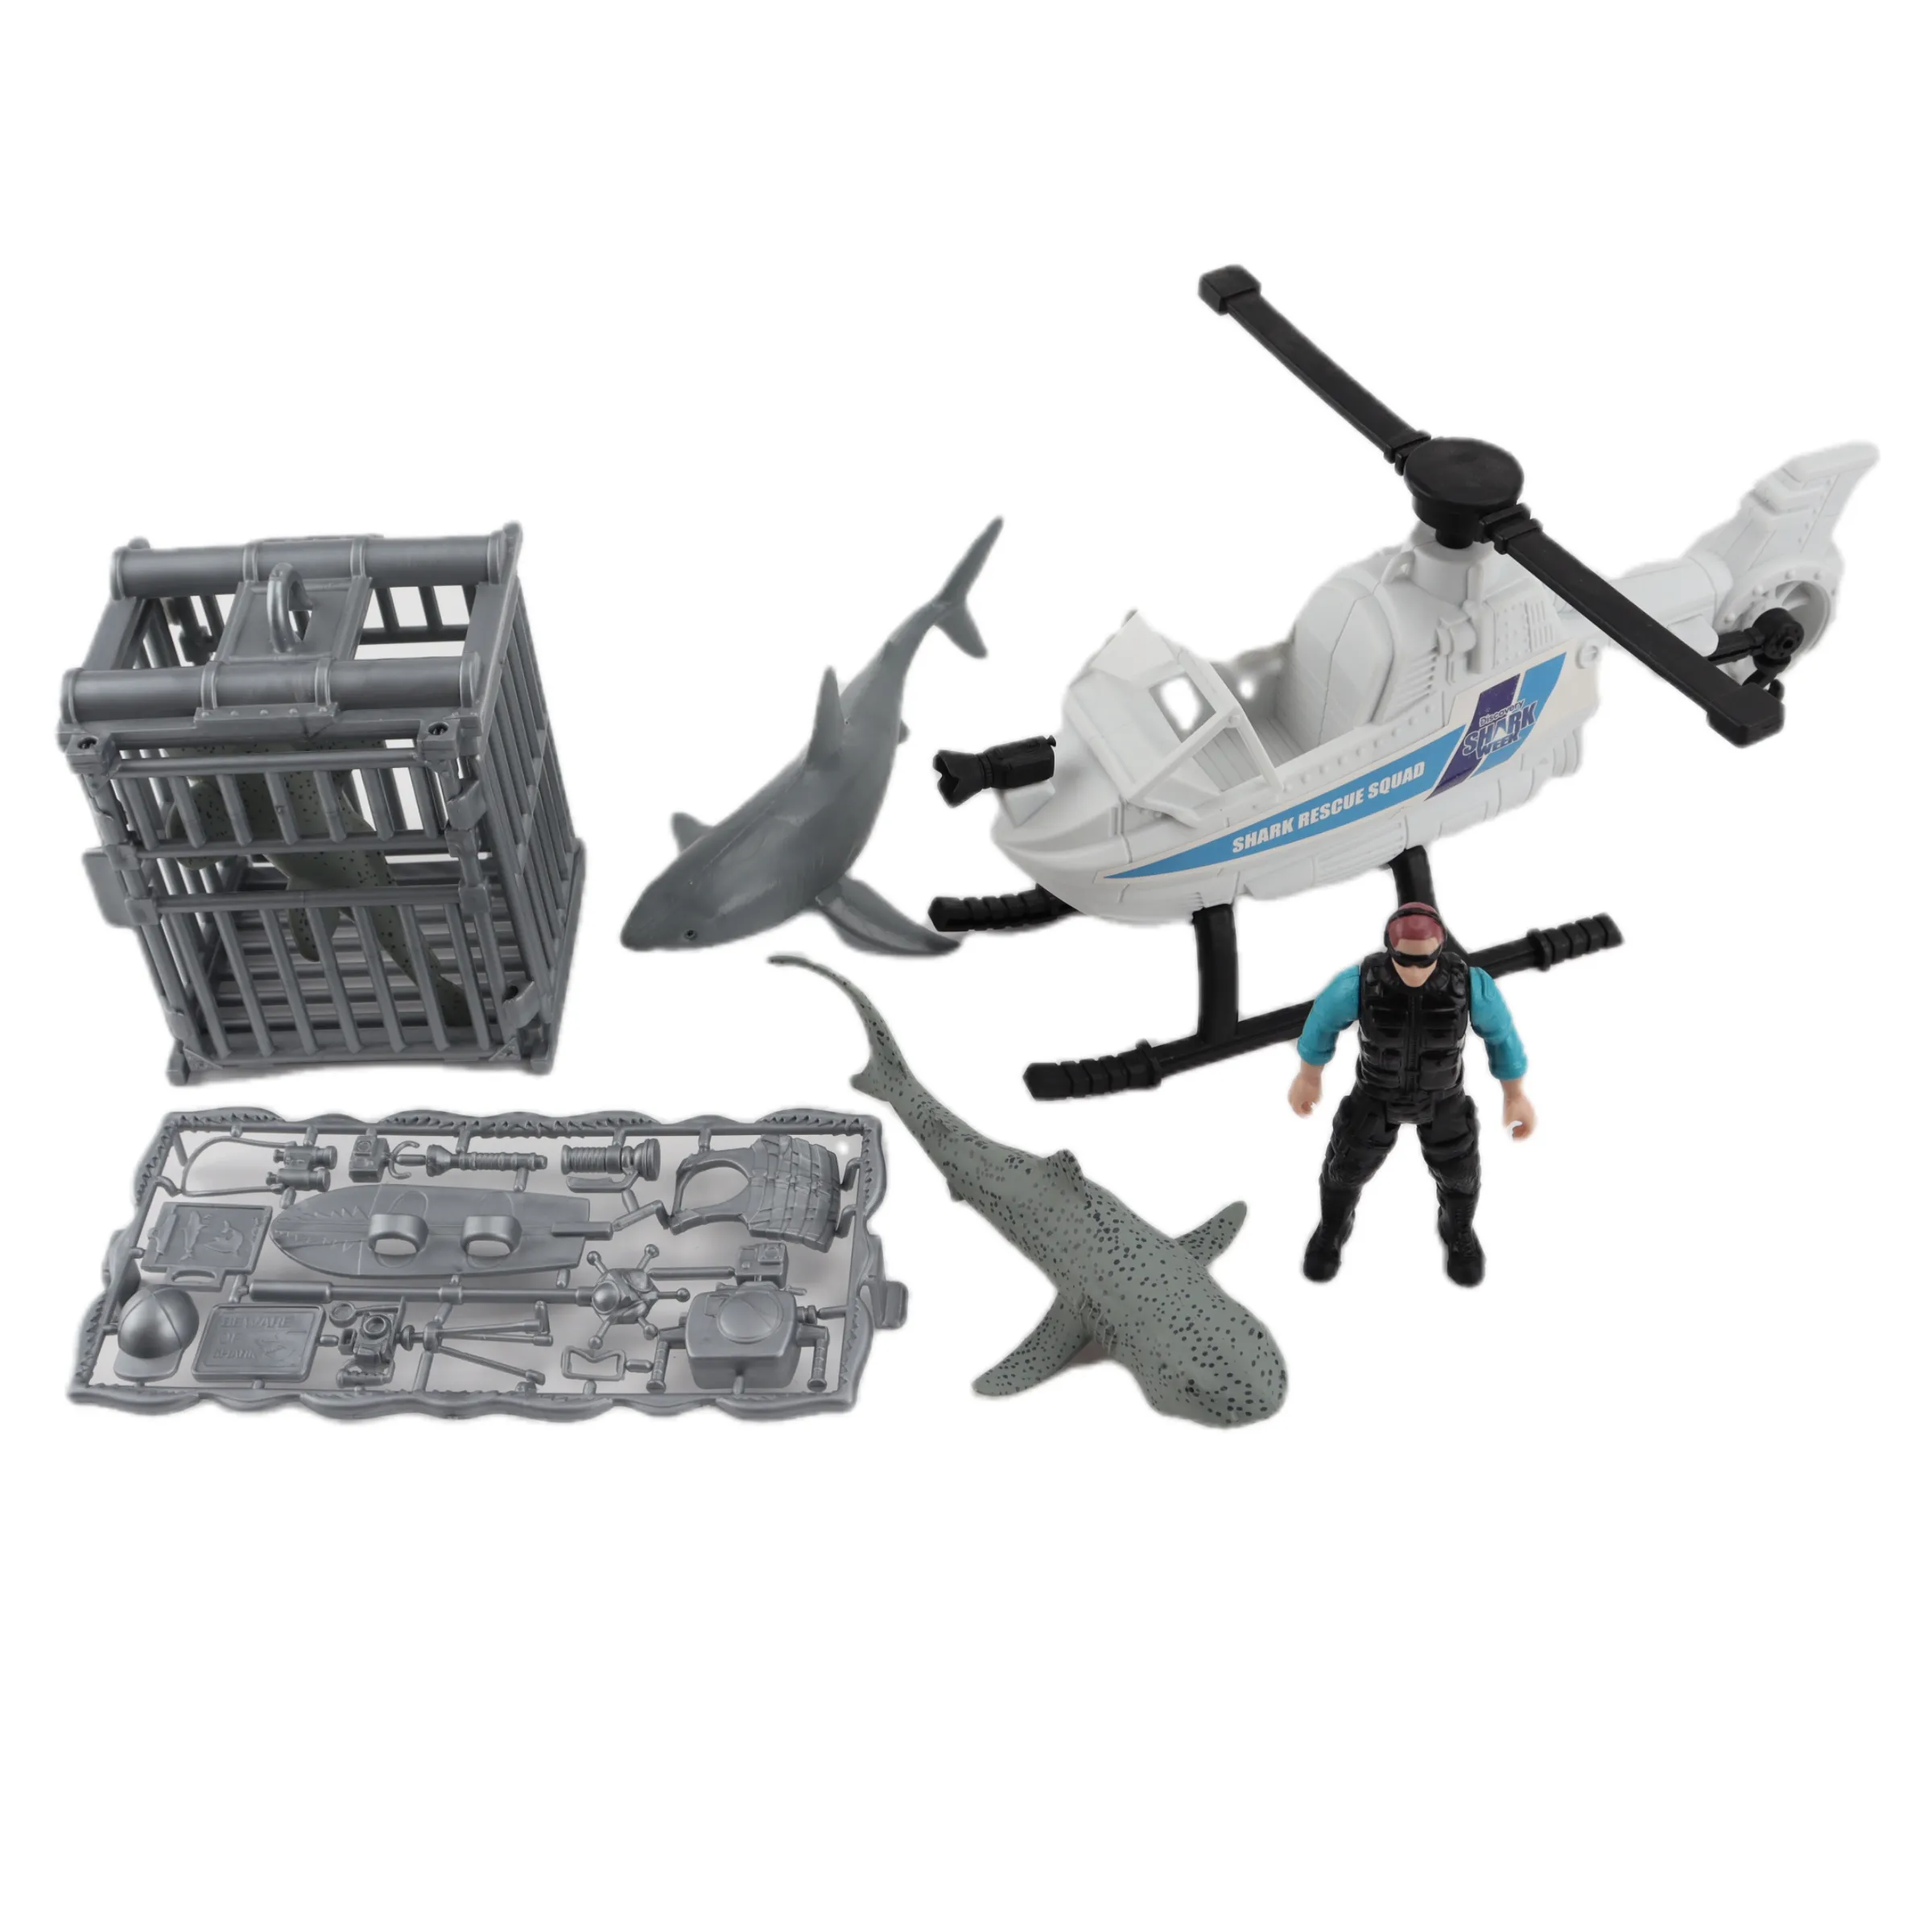 Sıcak satış derin deniz keşif seti oyna simülasyon helikopter büyük boy köpekbalıkları kurtarma kadro kafes oyuncaklar rol oynamak çocuklar için Set